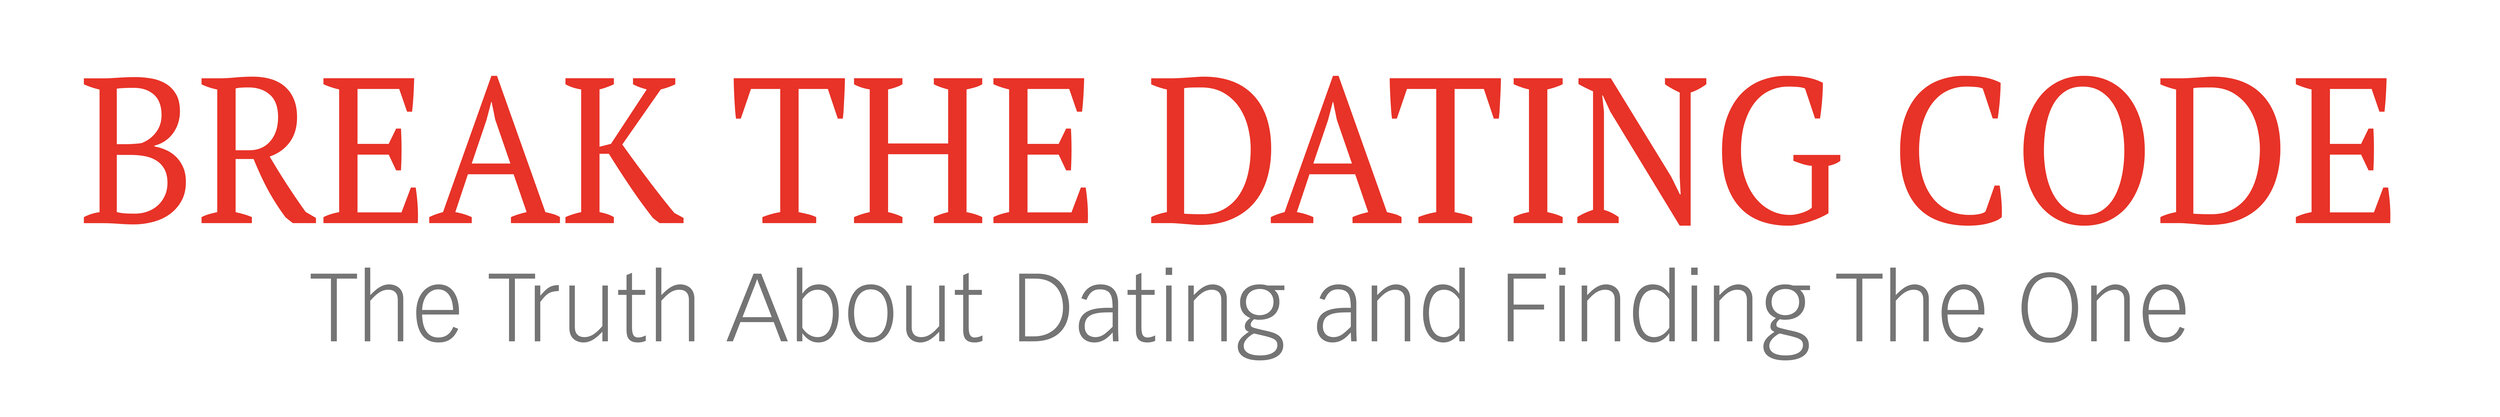 Break the Dating Code®